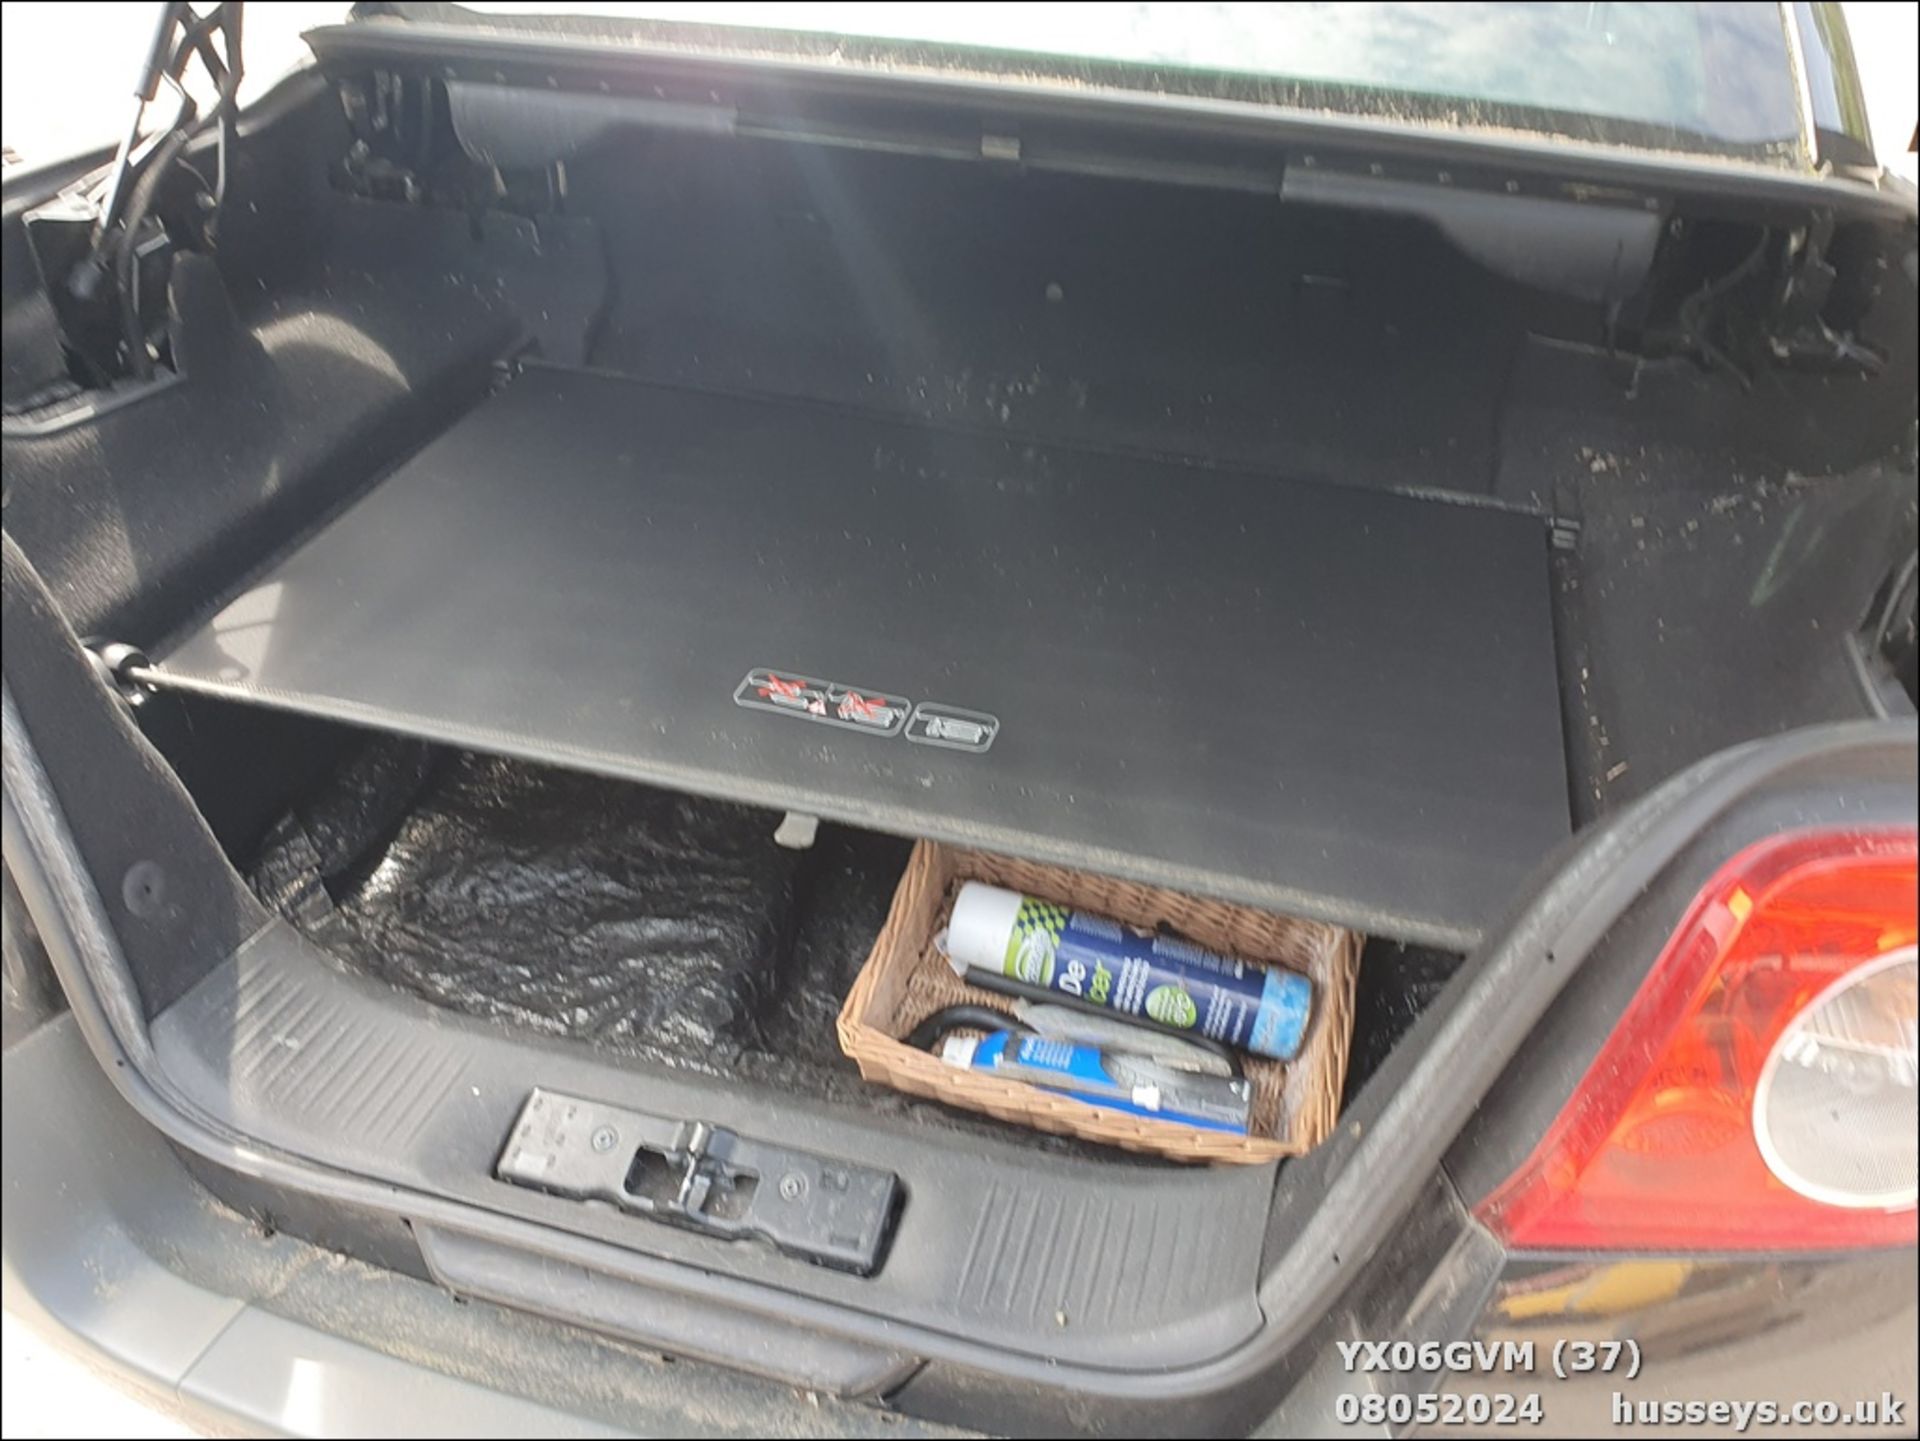 06/06 RENAULT MEGANE CAB DYNAM+ 16V - 1598cc 3dr Coupe (Black, 73k) - Image 38 of 51